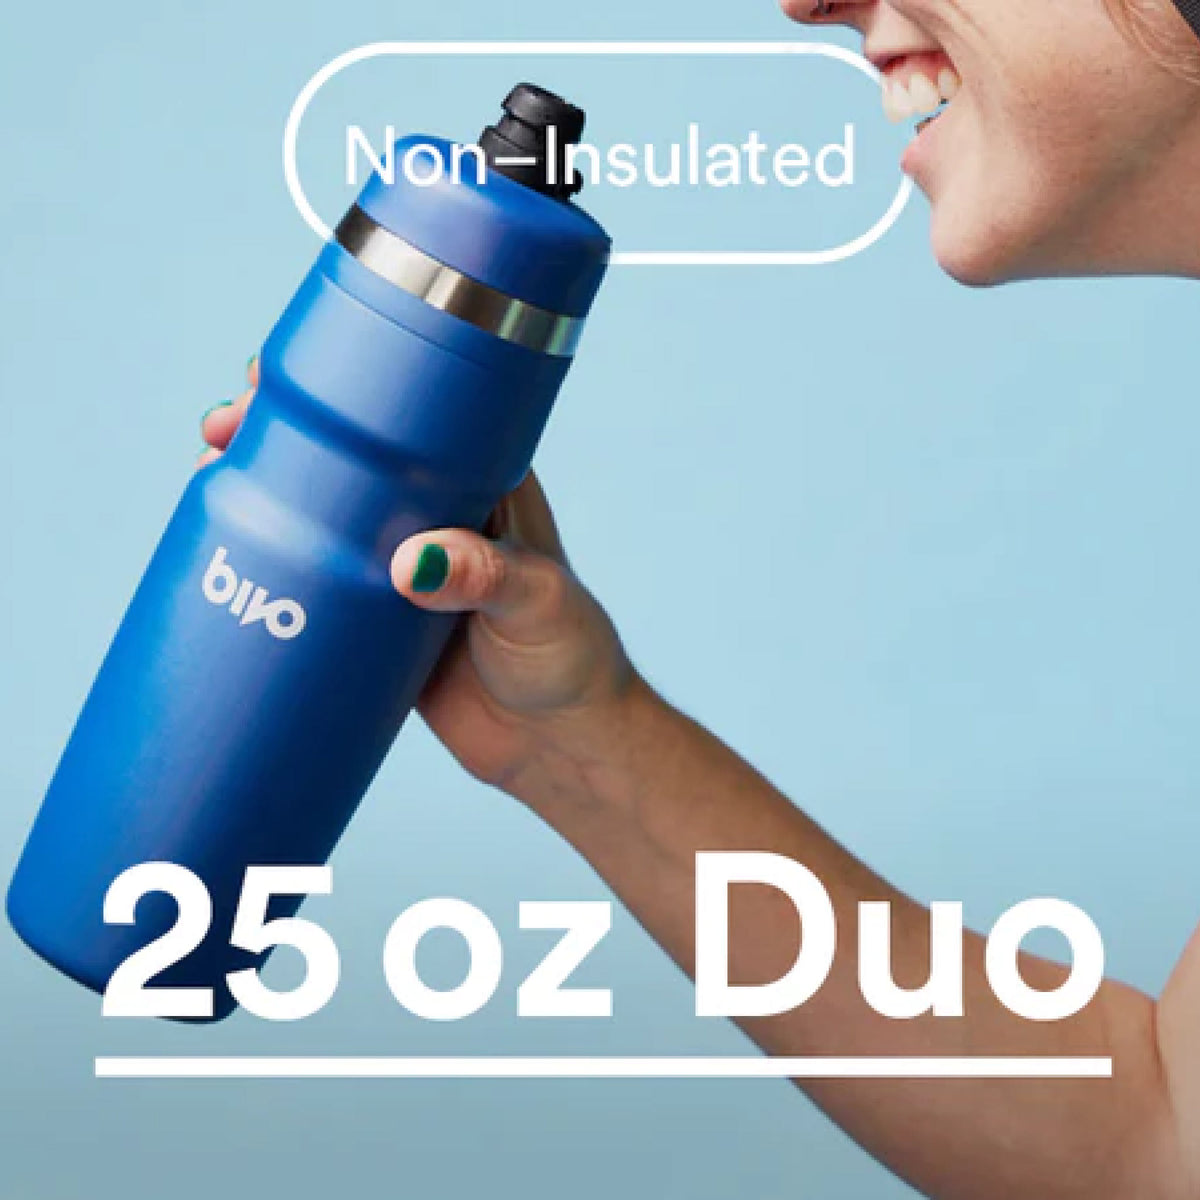 25 oz - Bivo Duo